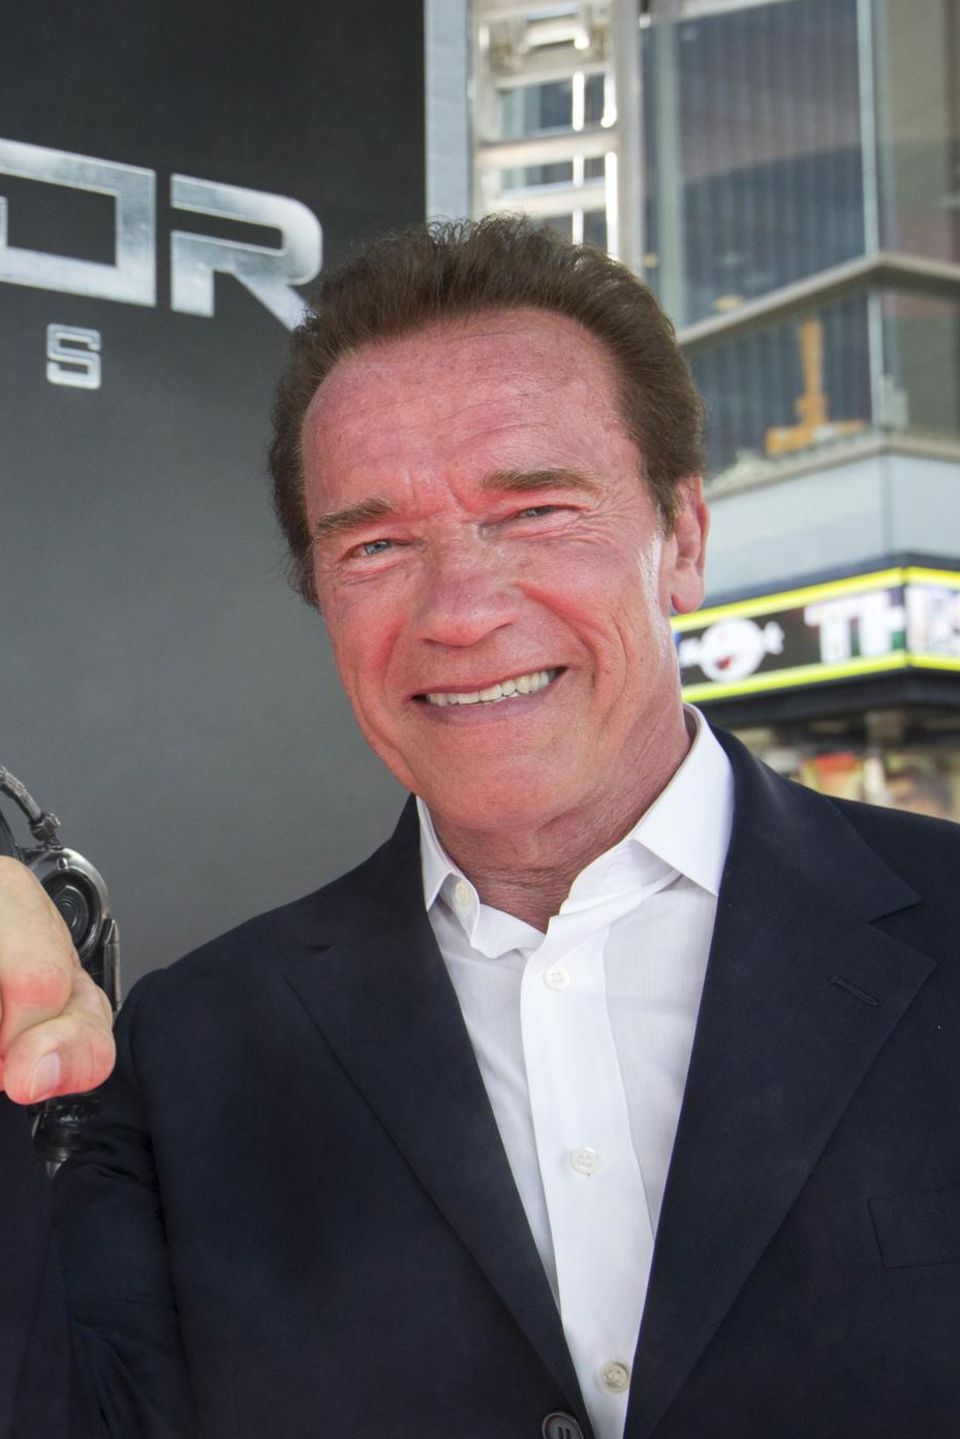 Arnold Schwarzenegger bei der Premiere von "Terminator: Genisys" in Berlin.